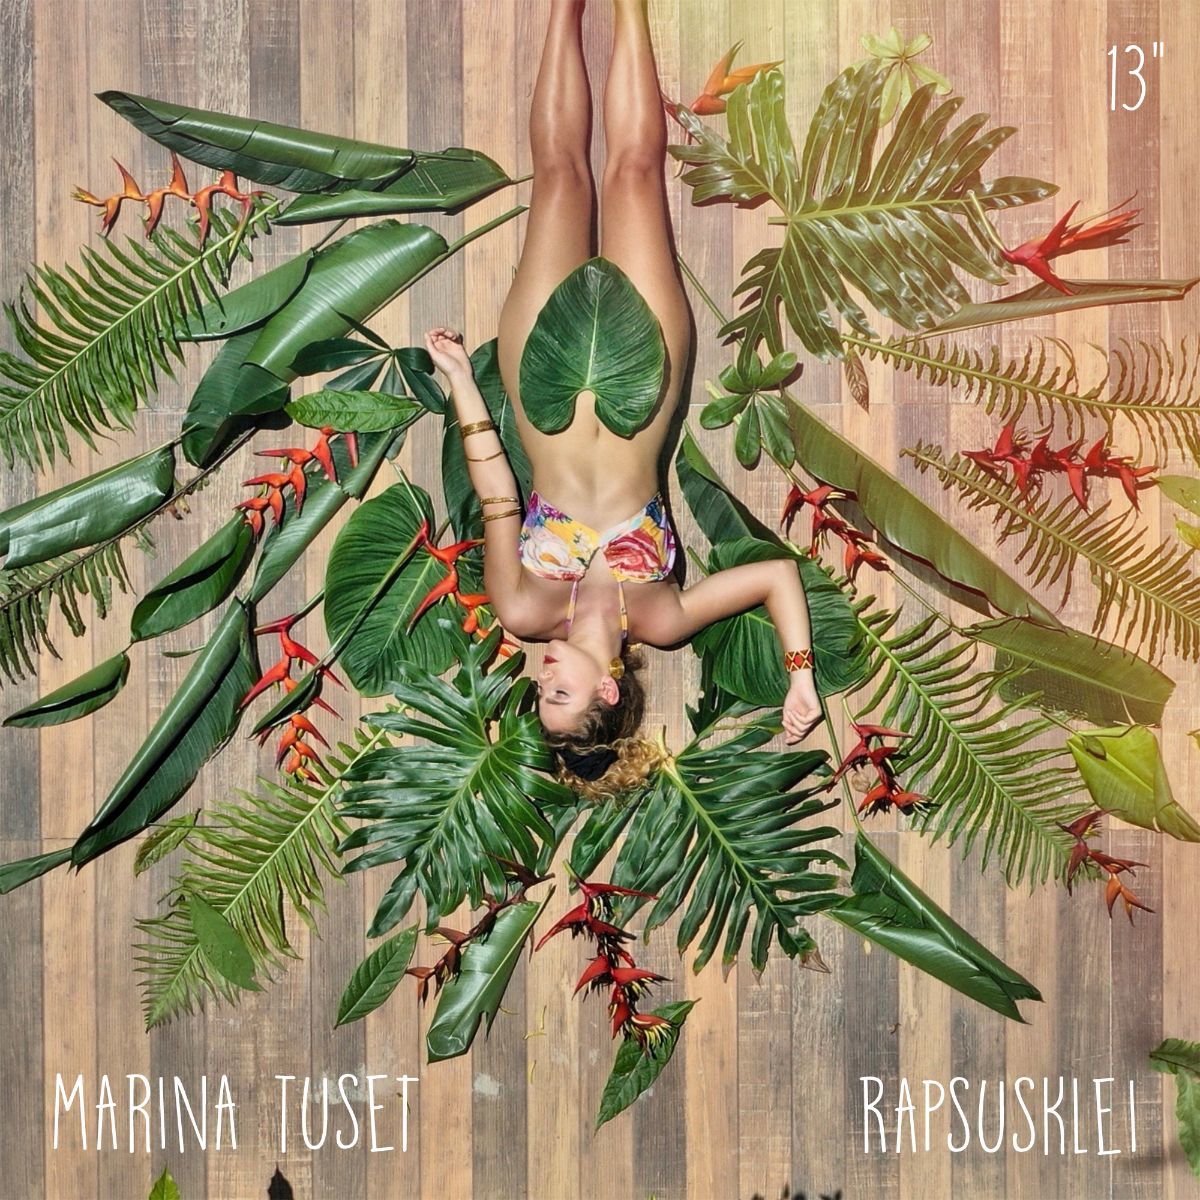 imagen 5 de La cantante Marina Tuset lanza un nuevo single en colaboración con Rapsuskelei.